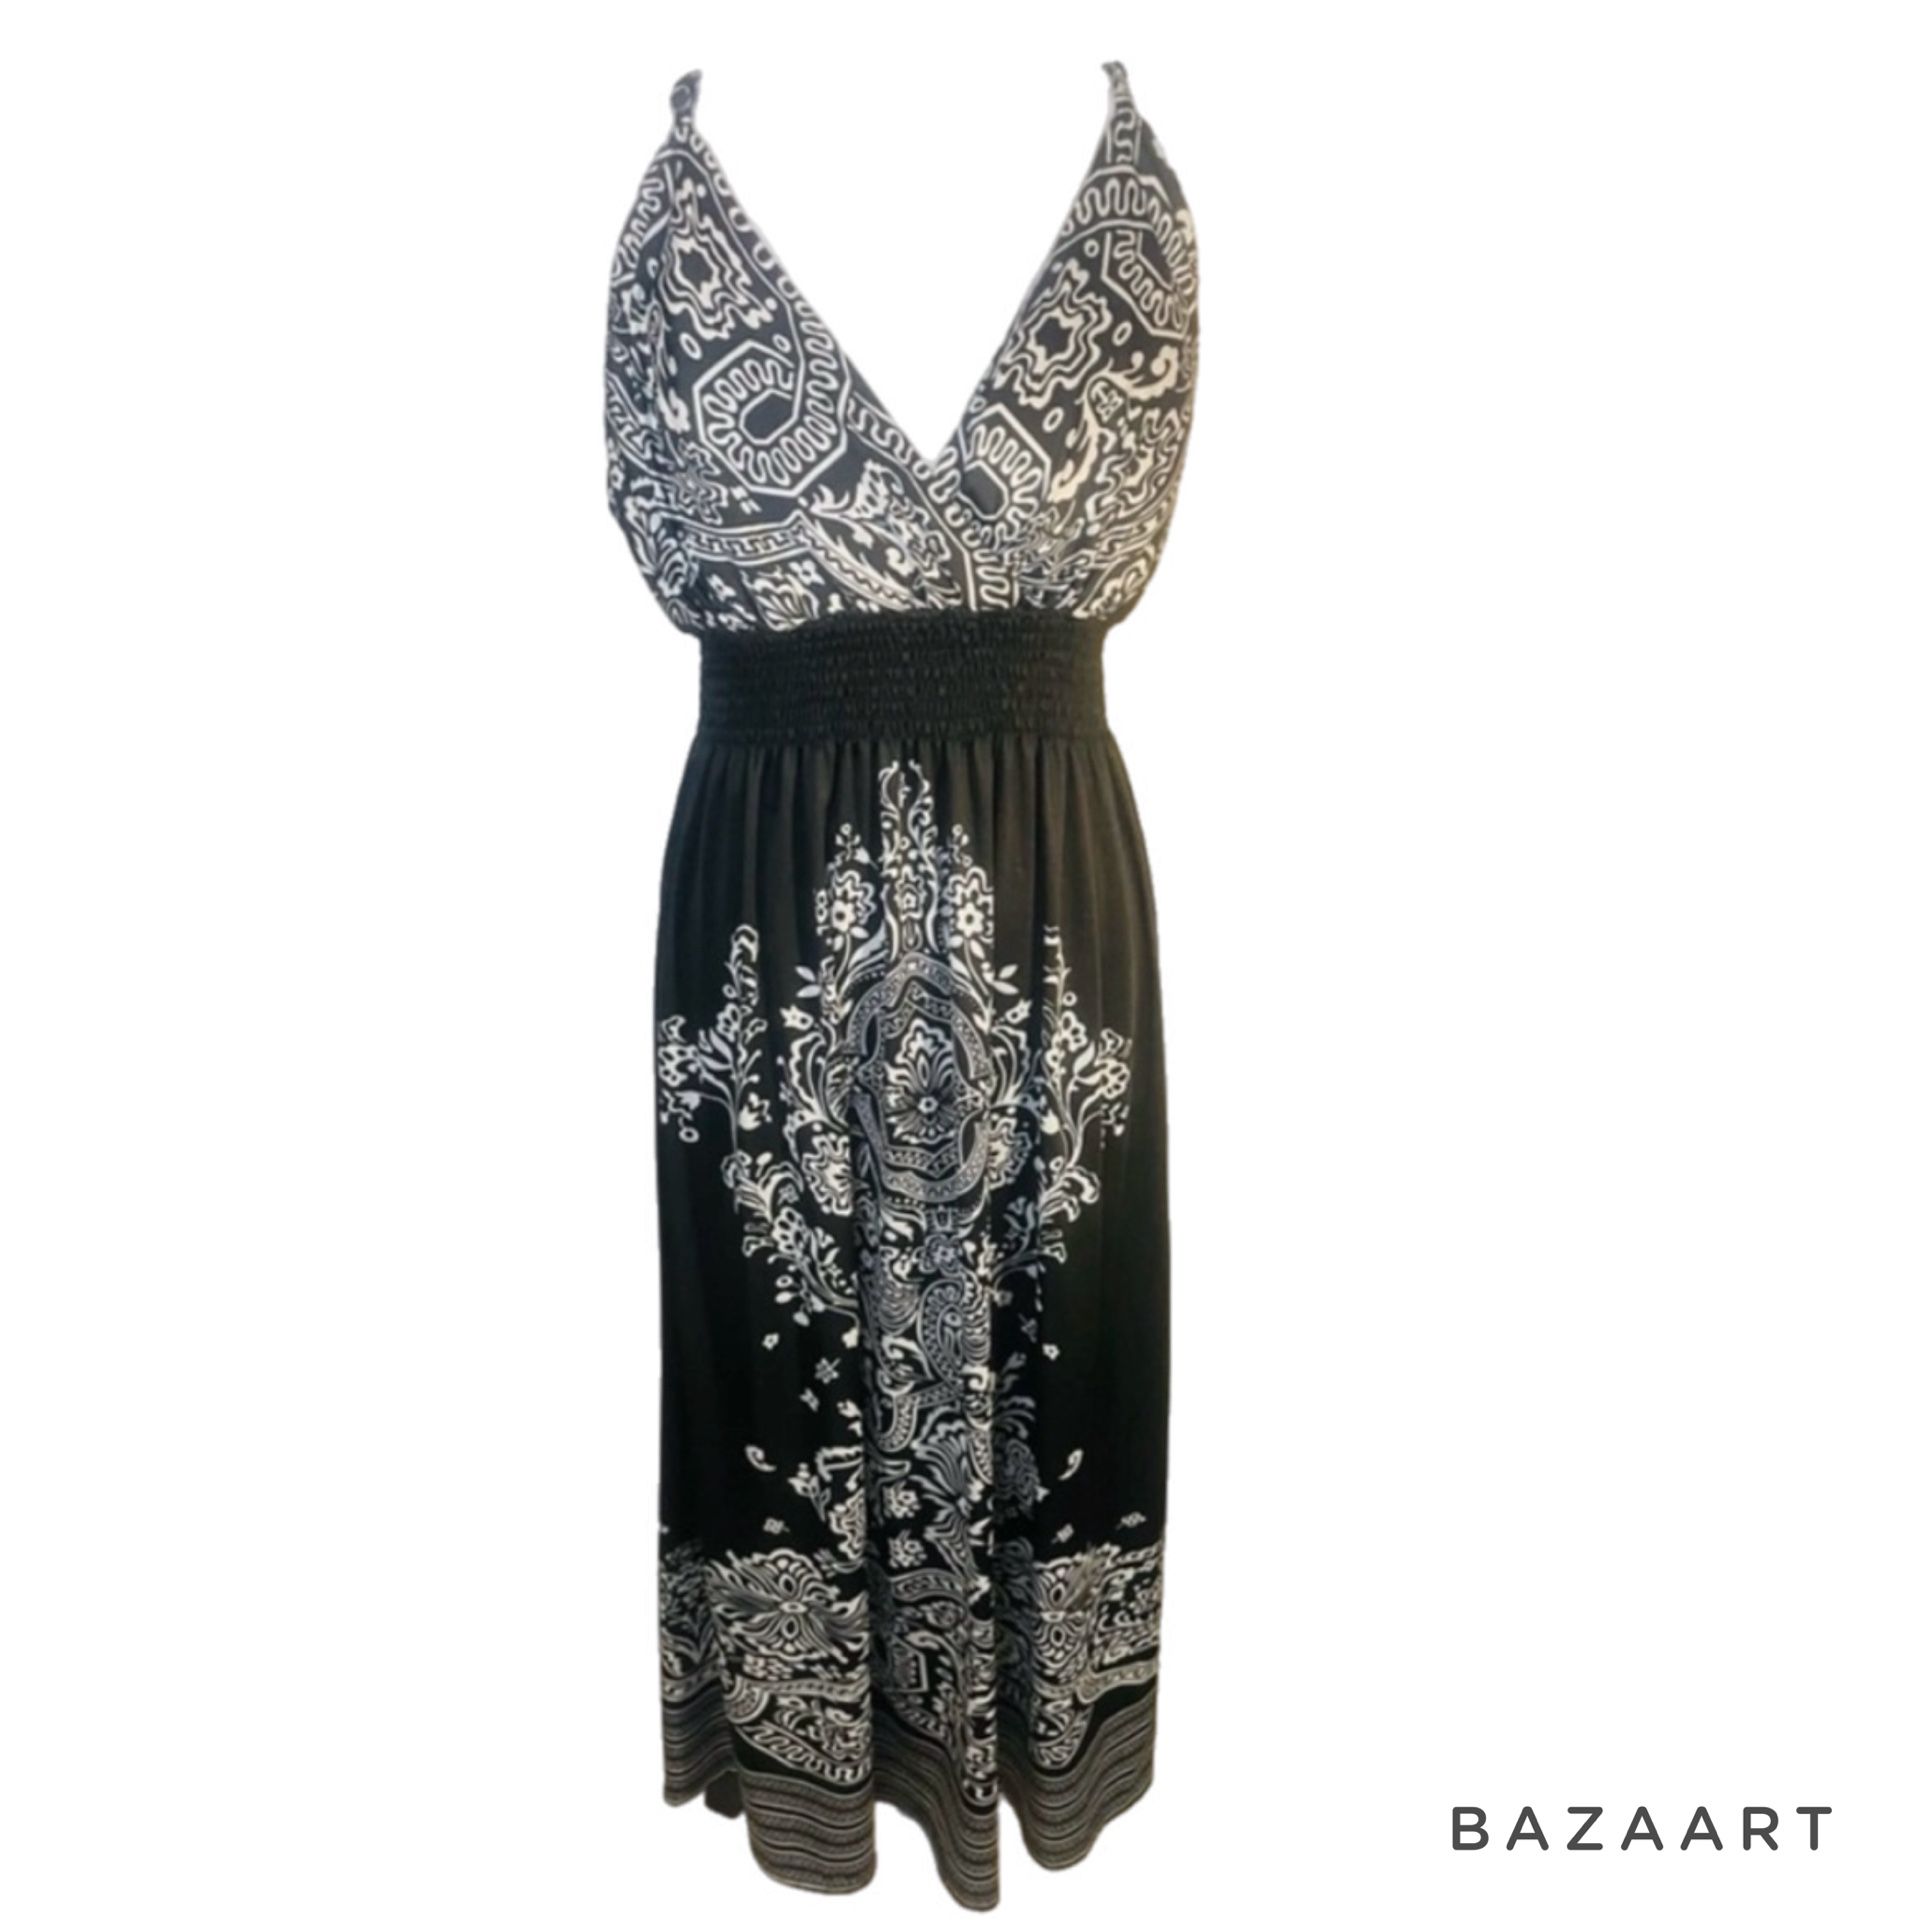 SZ 16 plus size nwt bohemian Black & white satin maxi Dress